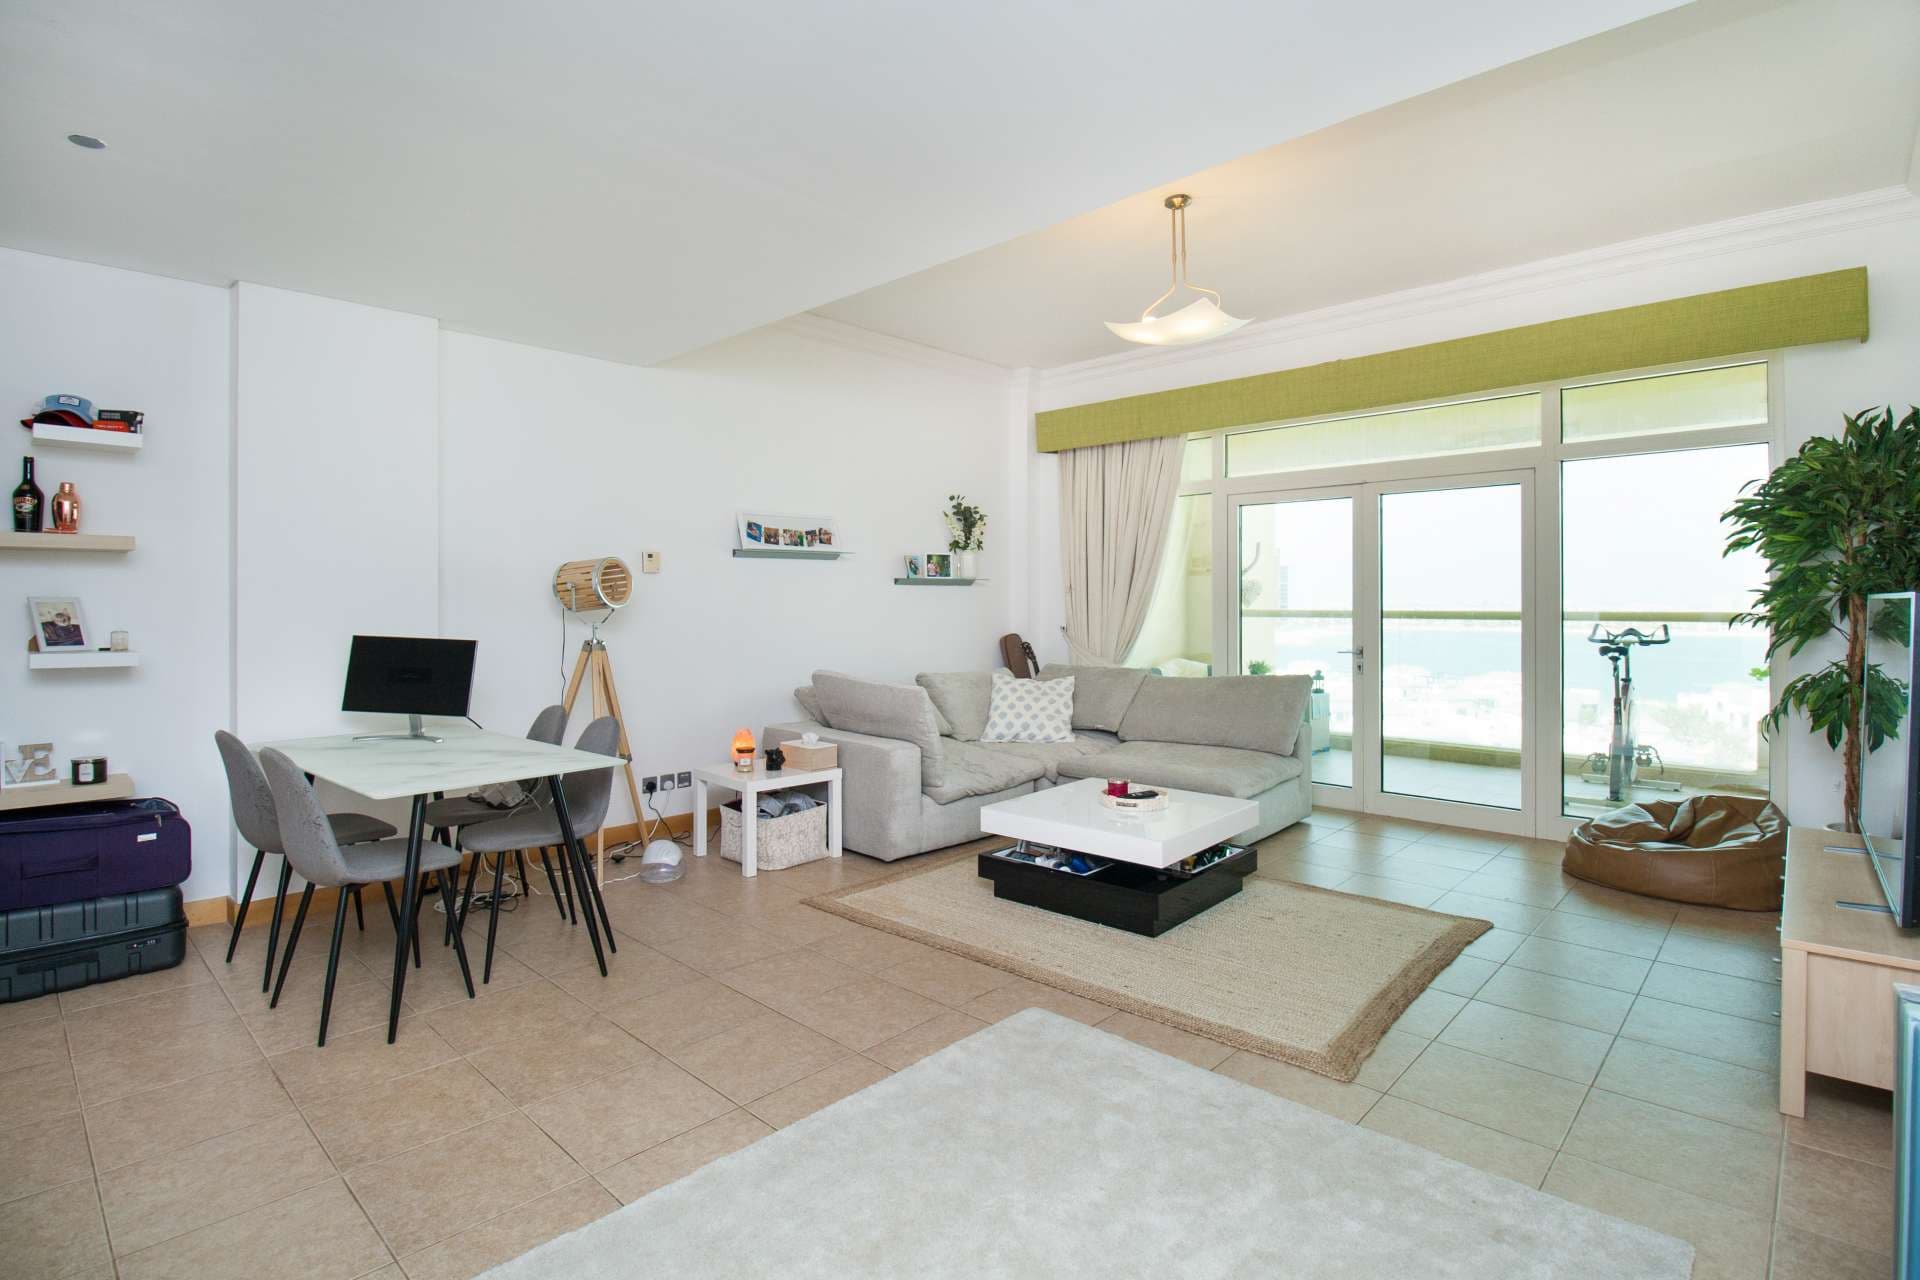 1 Bedroom Apartment For Rent Shoreline Apartments Lp04806 C7b63a4e818ca80.jpg